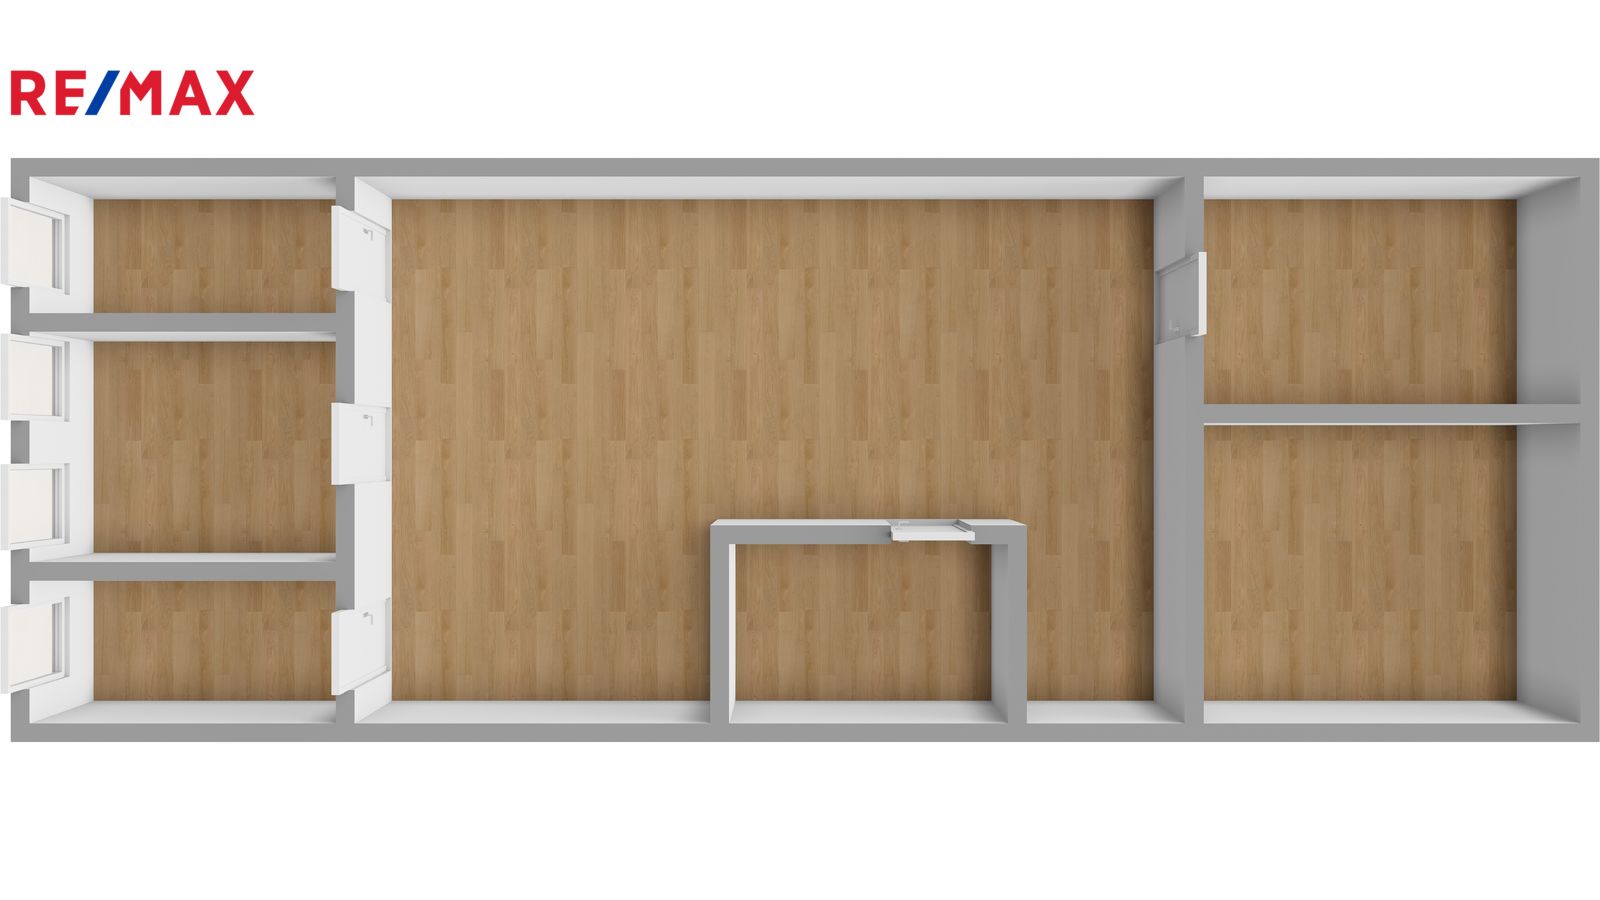 Prodej rodinného domu, Křinice - vizualizace 3. nadzemního podlaží